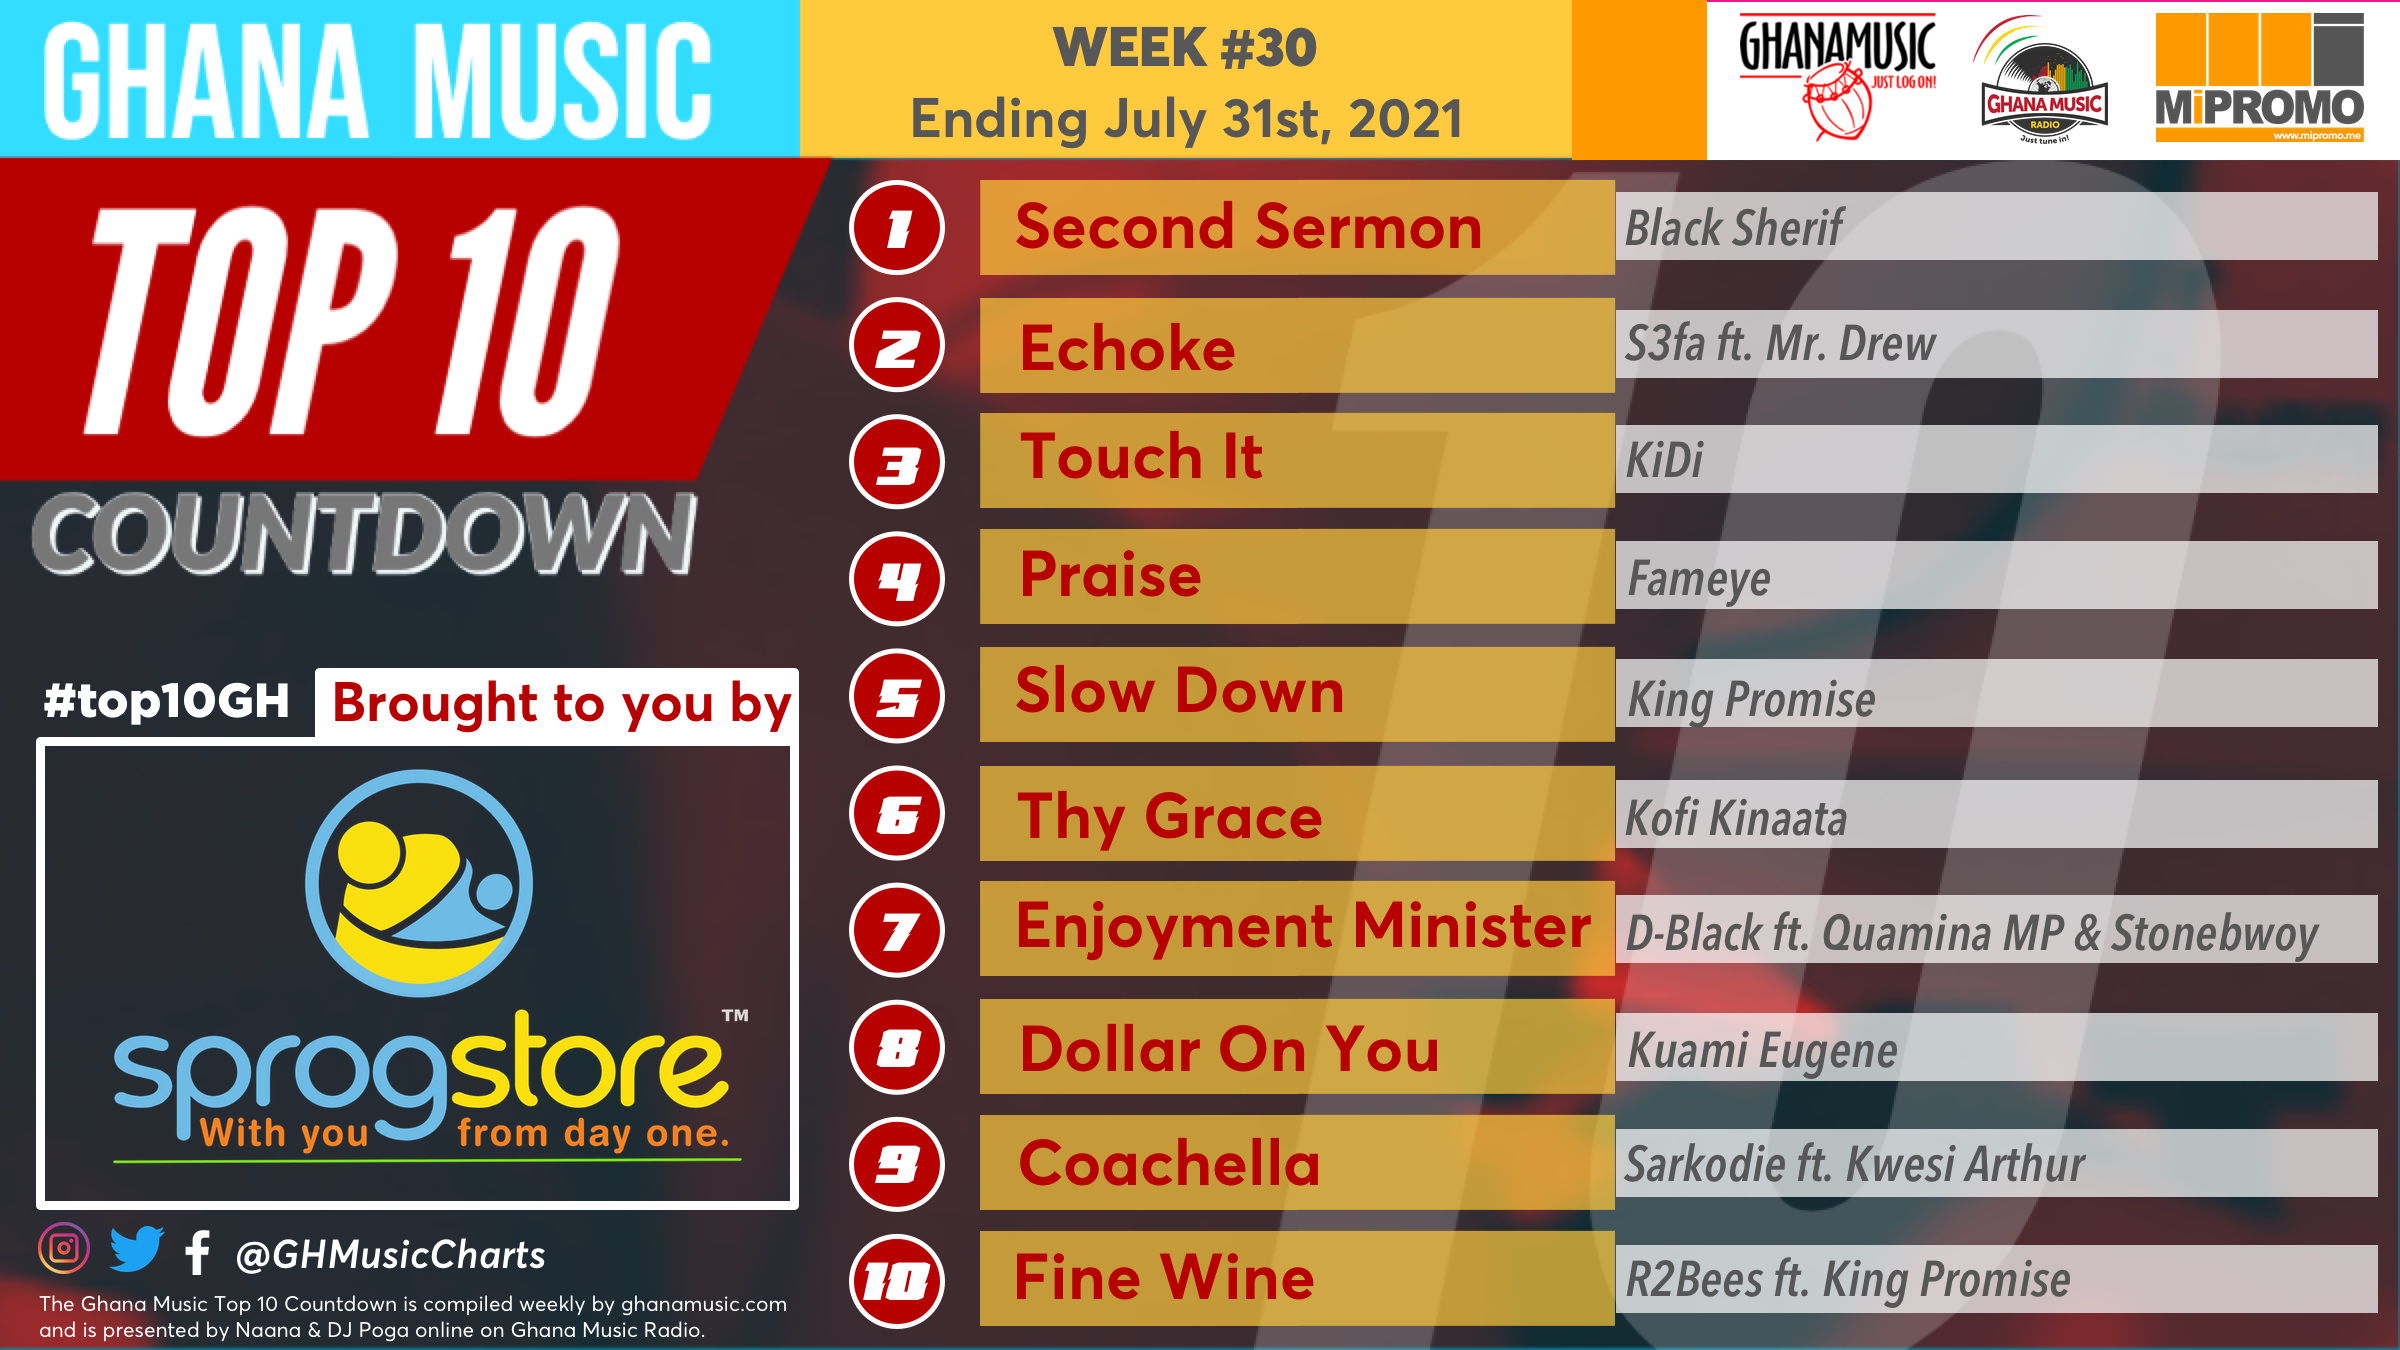 2021 Week 30: Ghana Music Top 10 Countdown